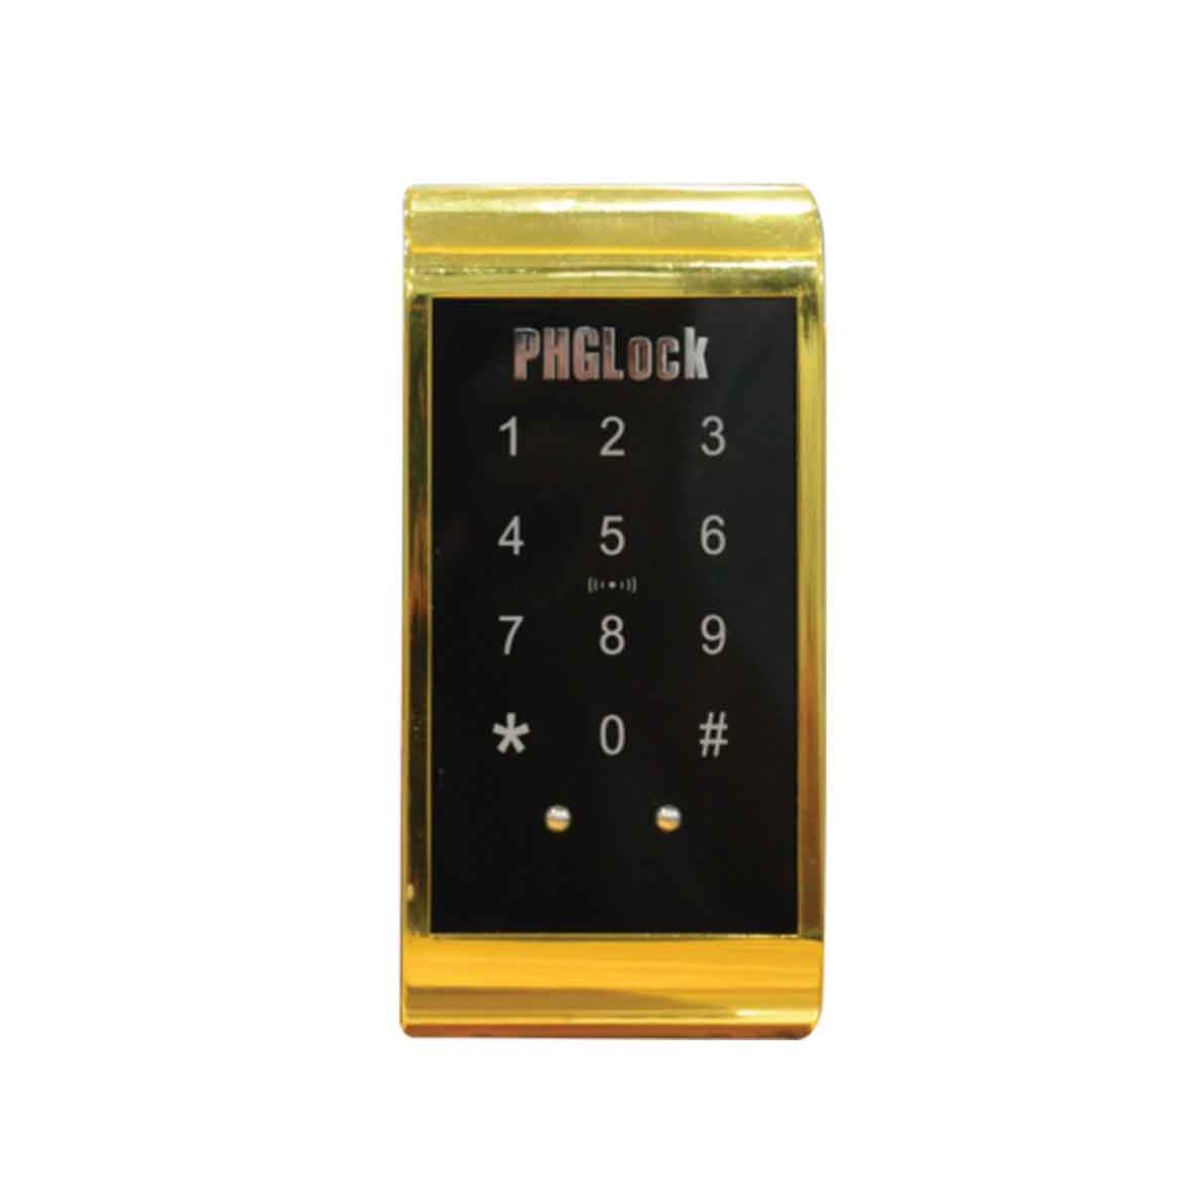 Khóa tủ mã số và thẻ cảm ứng TI PHGLock CL9118 cấu tạo bằng hợp kim, có kích nguồn dự phòng bằng pin vuông 9V